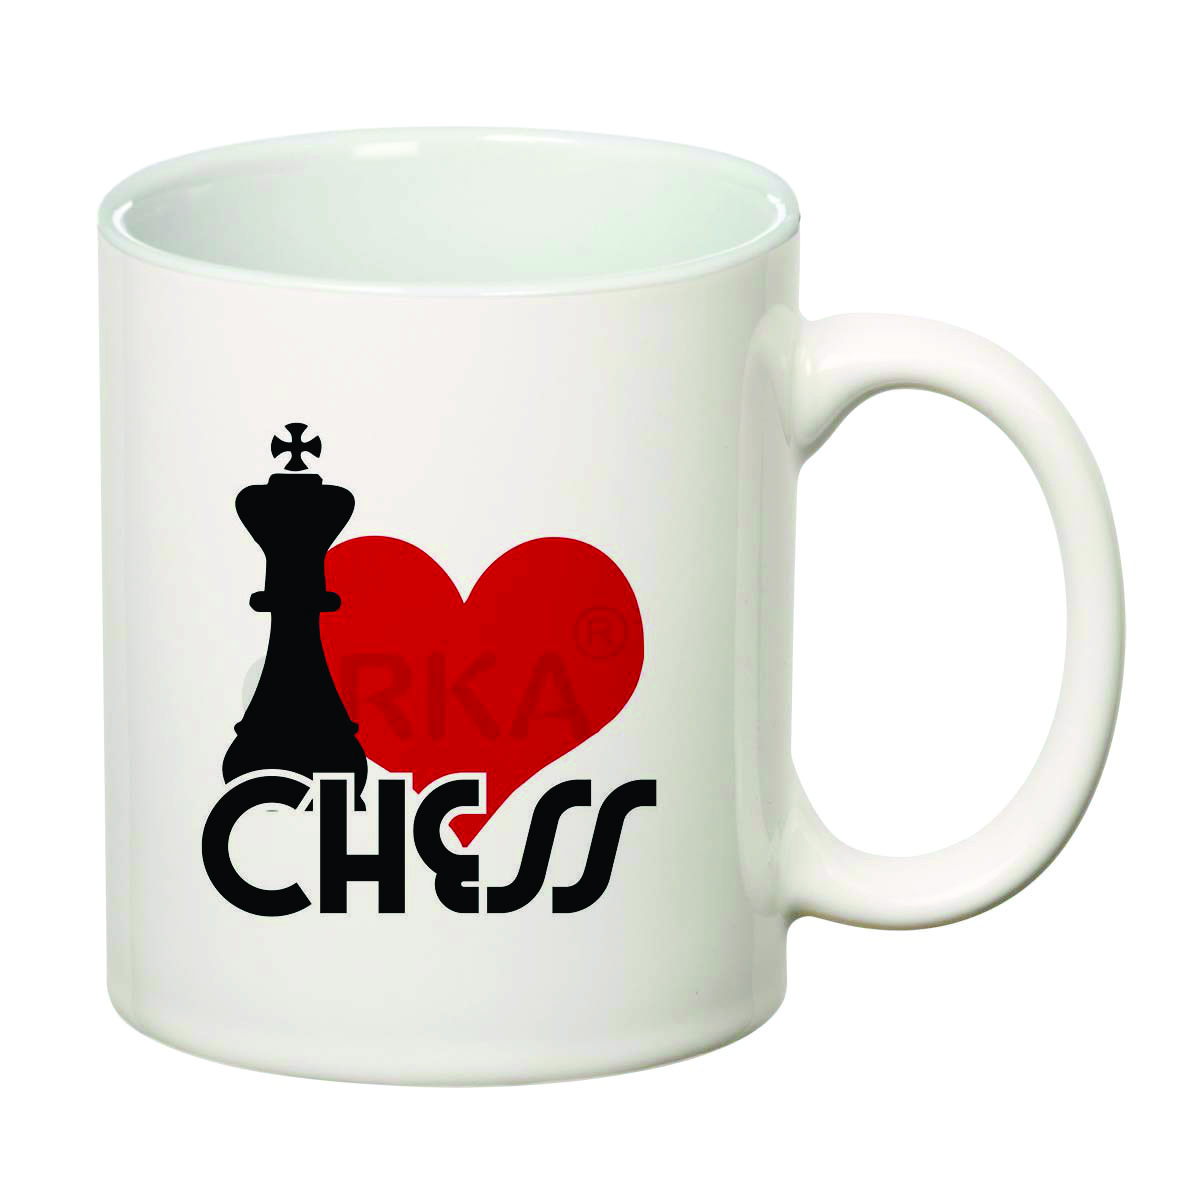 ORKA Coffee Mug (Chess)Theme 11 Oz   